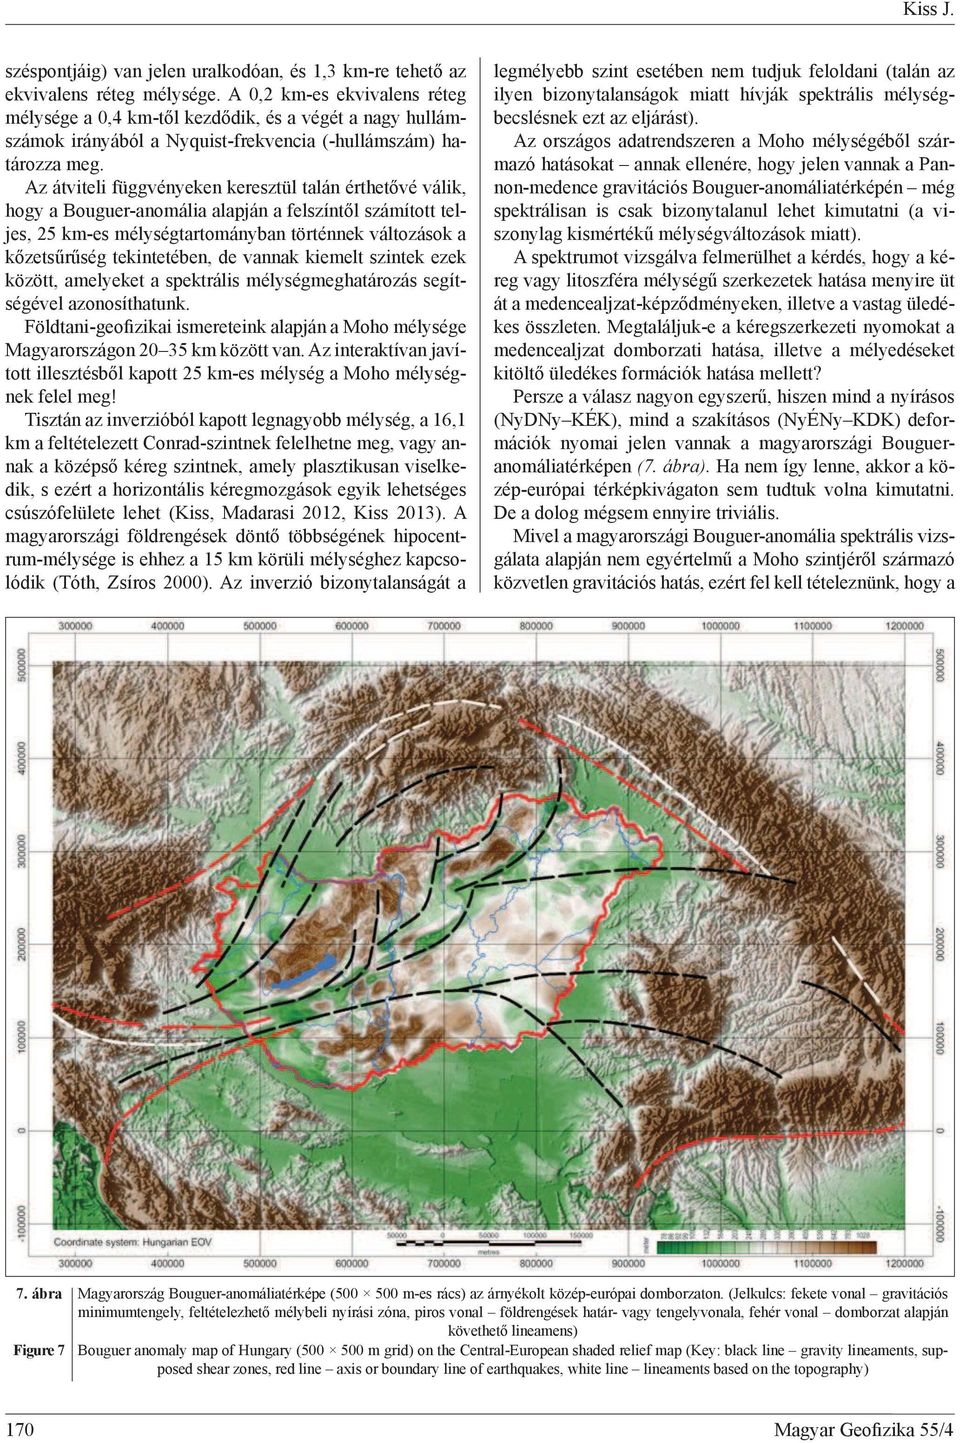 Az átviteli függvényeken keresztül talán érthet vé válik, hogy a Bouguer-anomália alapján a felszínt l számított teljes, 25 km-es mélységtartományban történnek változások a k zets r ség tekintetében,